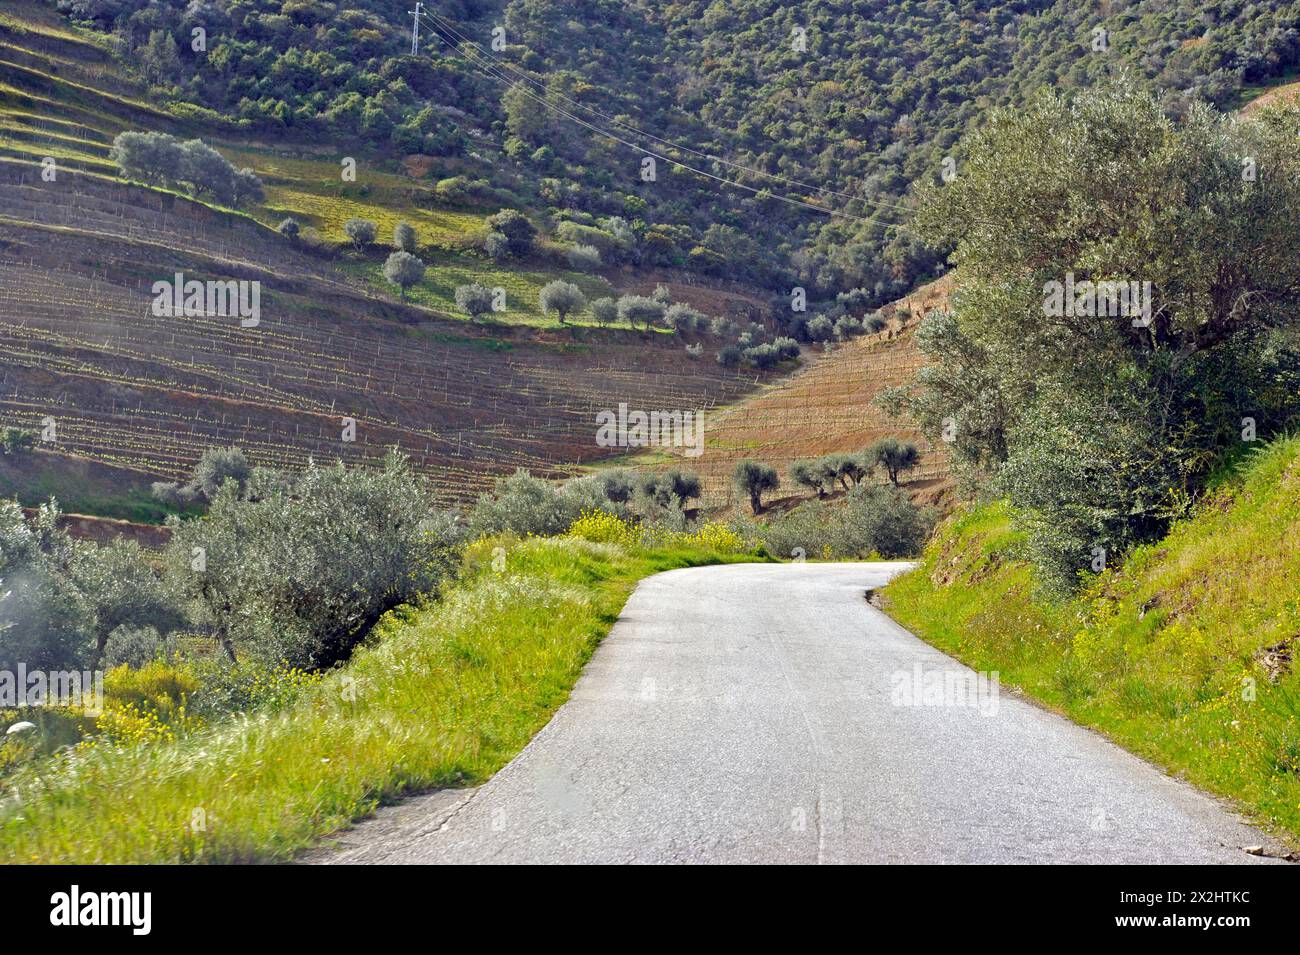 Fahren Sie auf einer malerischen Straße mit Weinbergen in der Region Duoro River Valley in Portugal Stockfoto